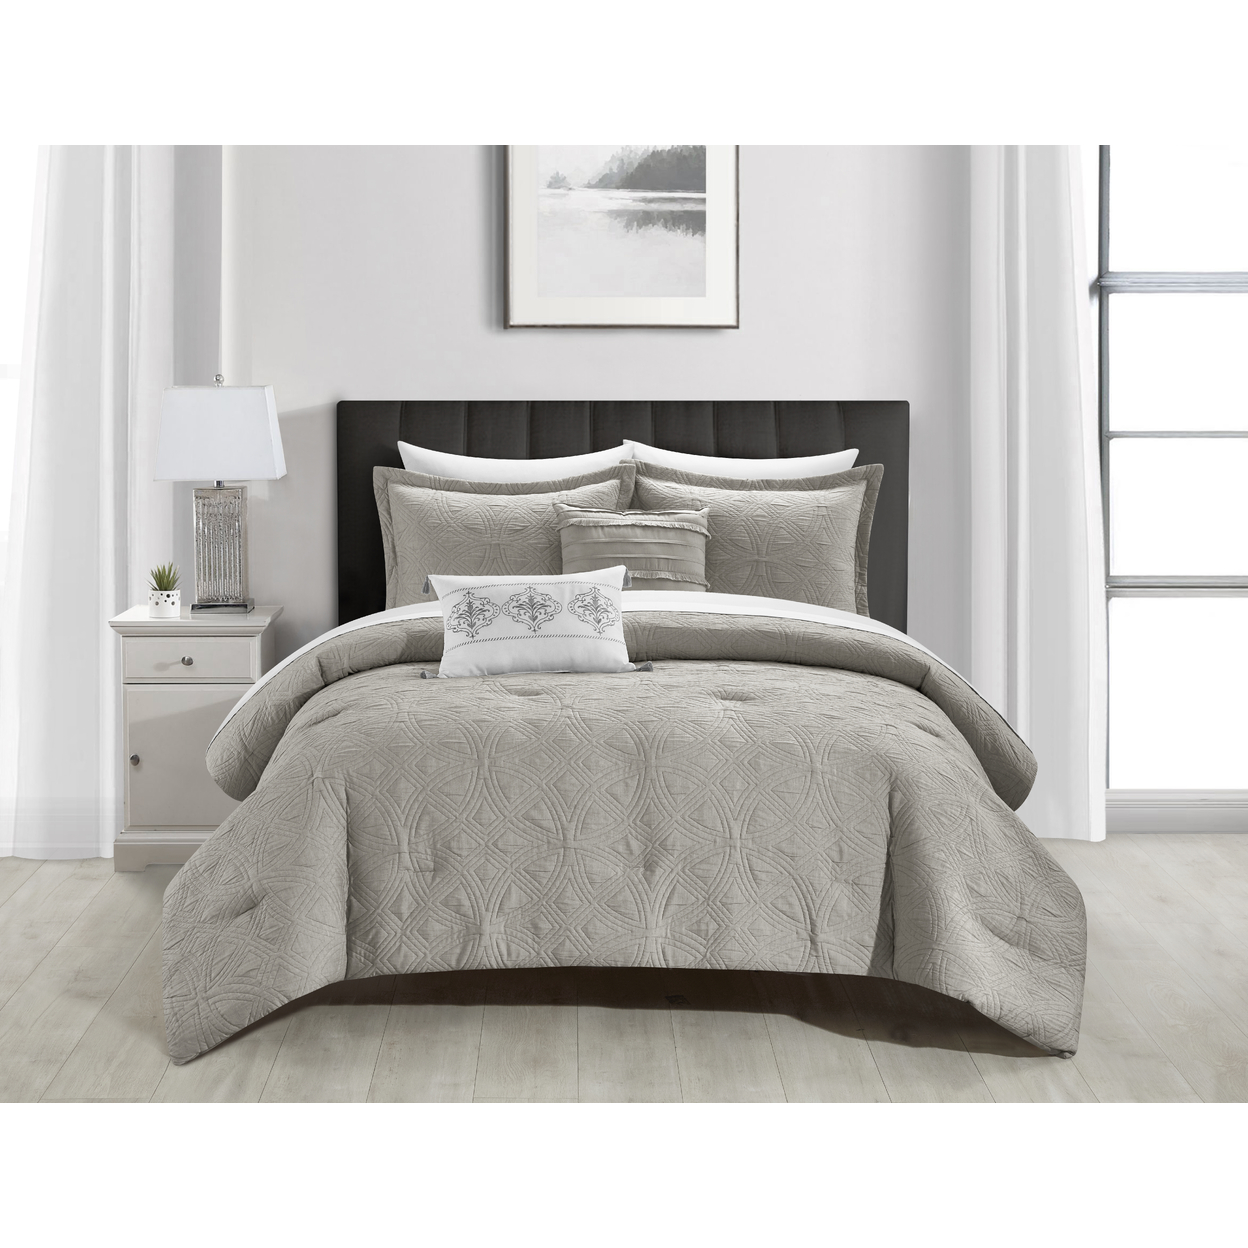 Bartista 5 Piece Cotton Blend Comforter Set Jacquard - Grey, Queen